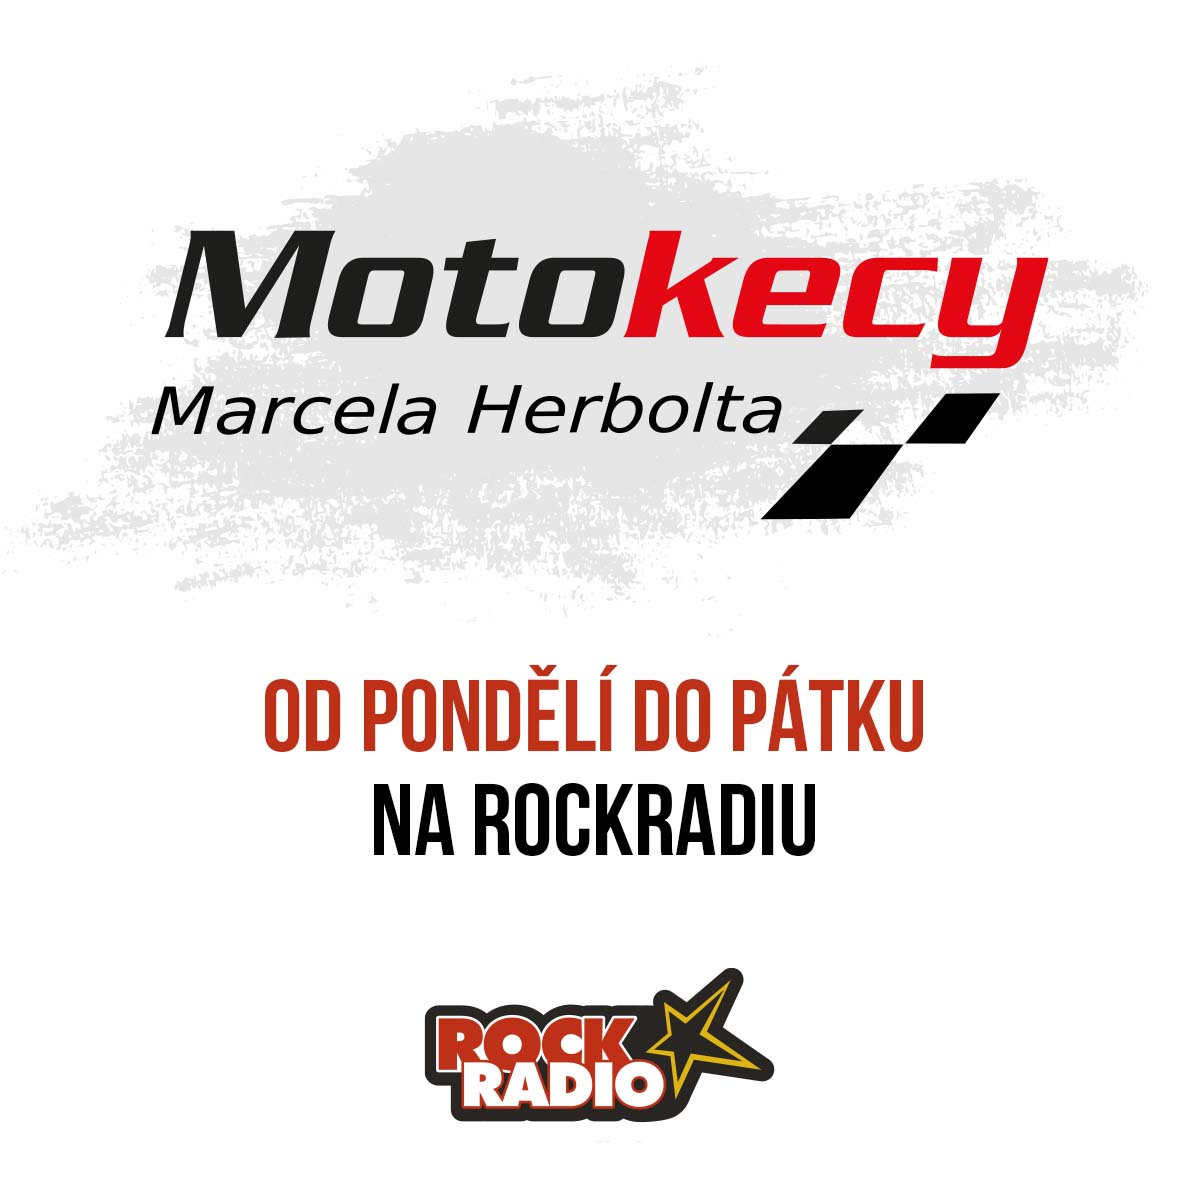 Motokecy Marcela Herbolta na pátek 06 října